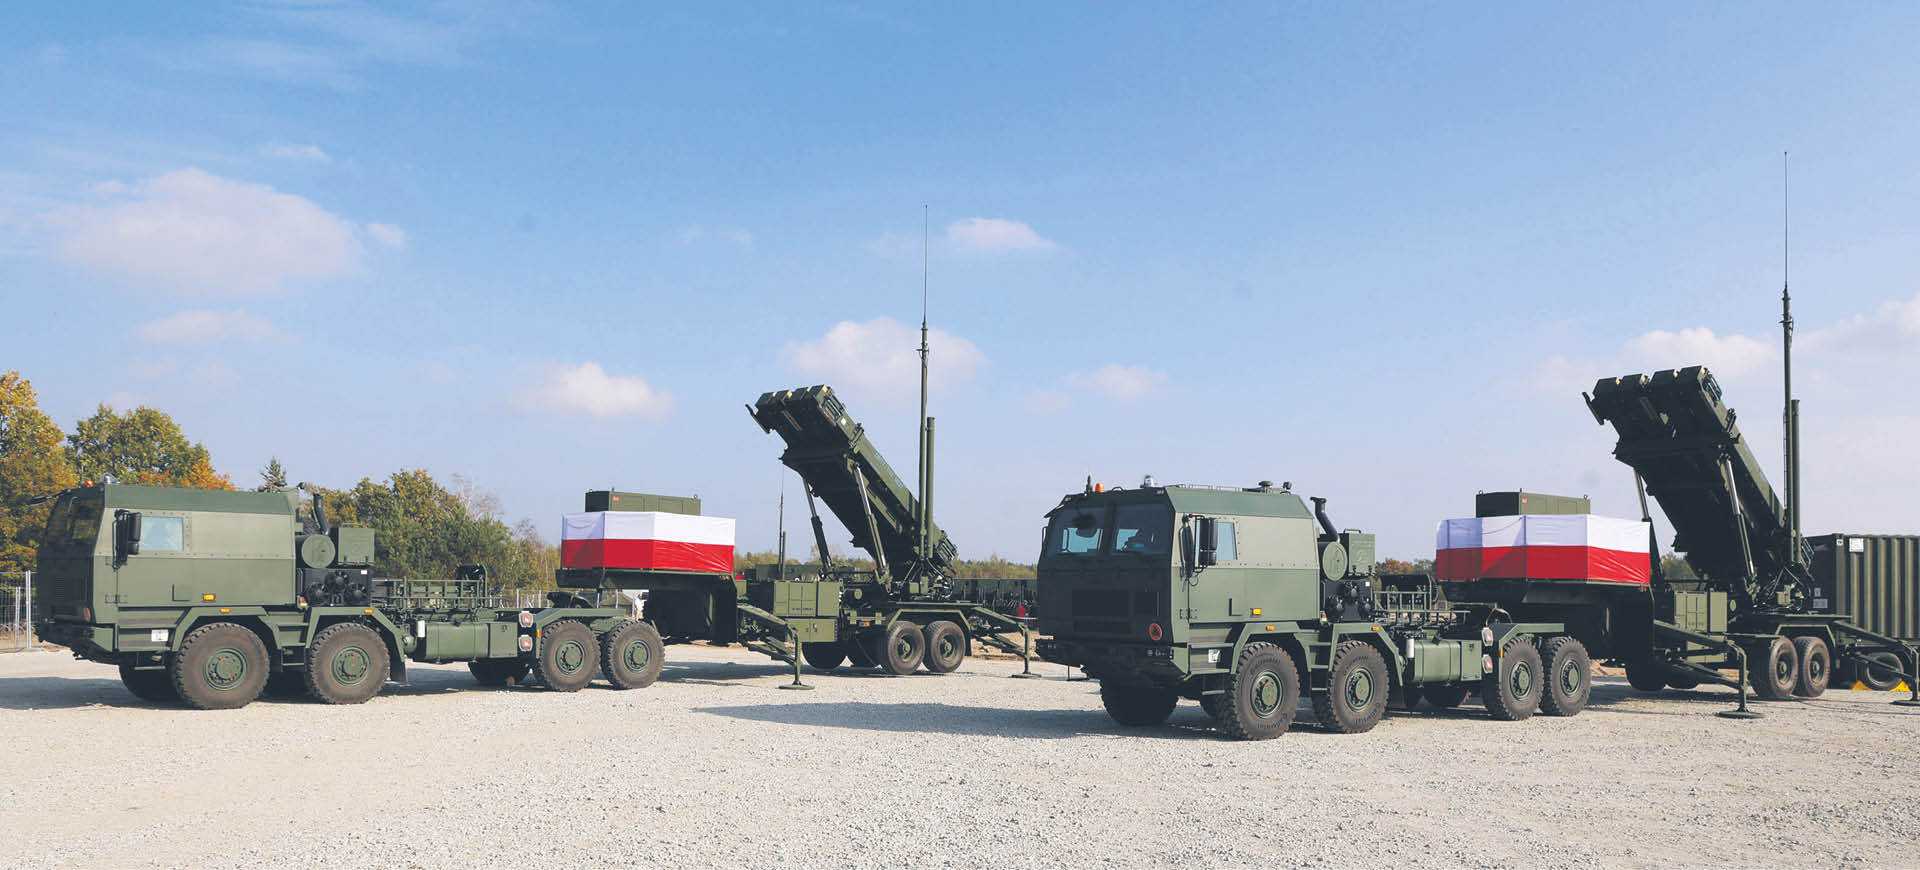 Polsce brakuje najwyższego piętra obrony przeciwrakietowej, powyżej 100 km, które zapewnia system Patriot